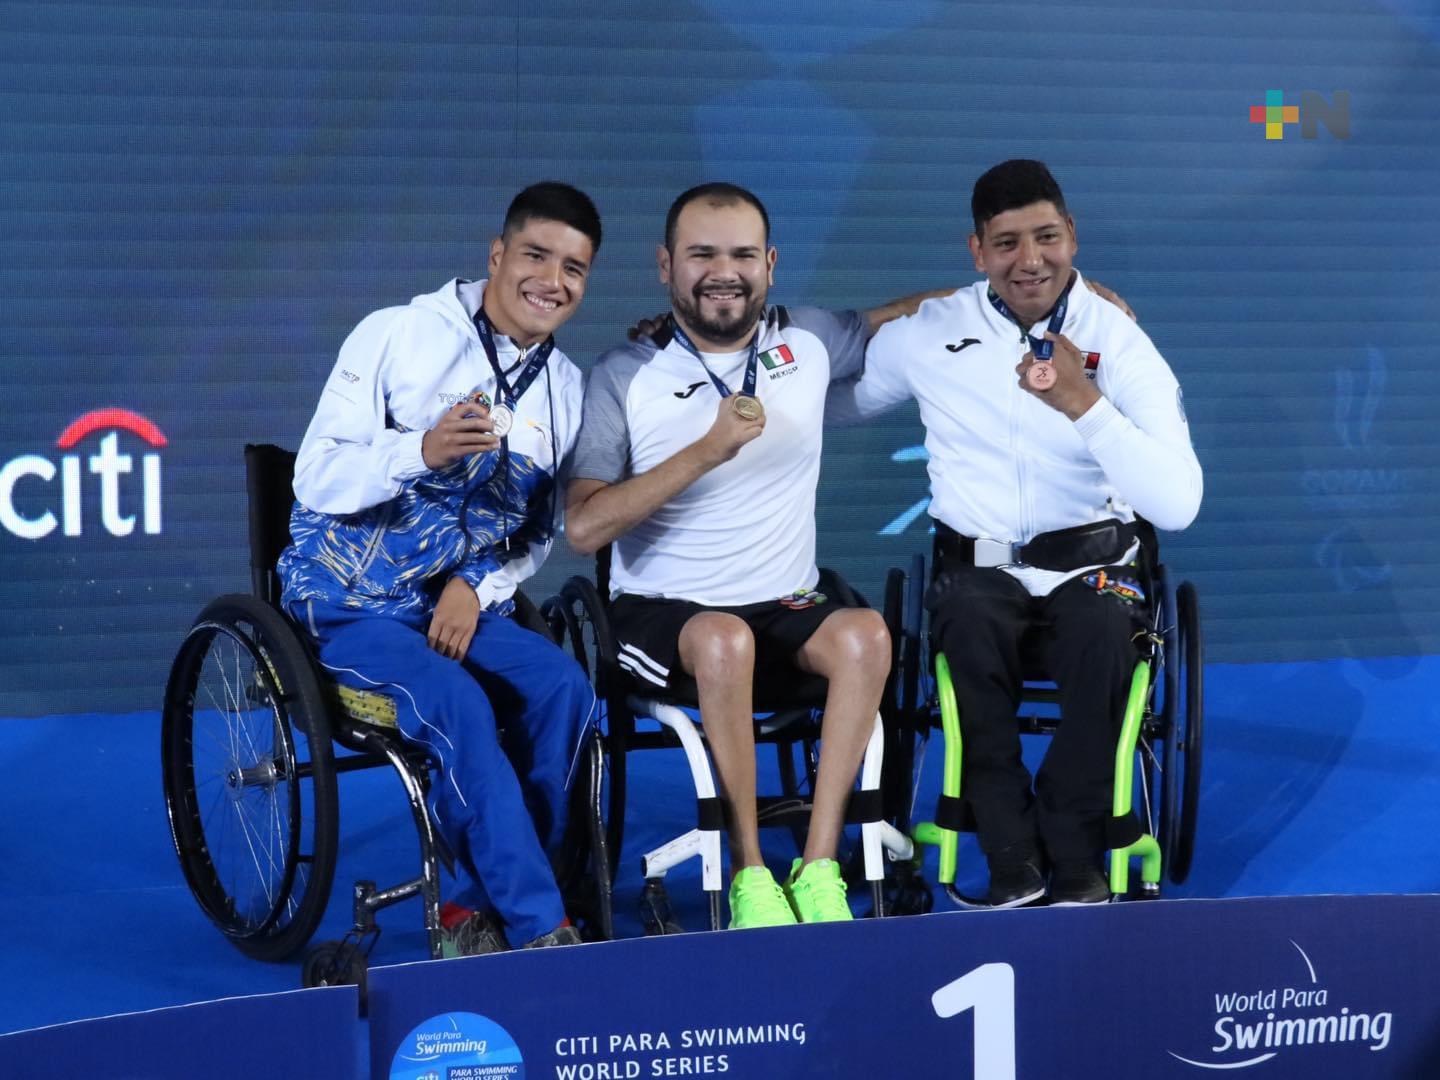 Paranadadores veracruzanos brillan en el Citi Paraswimming World Series México